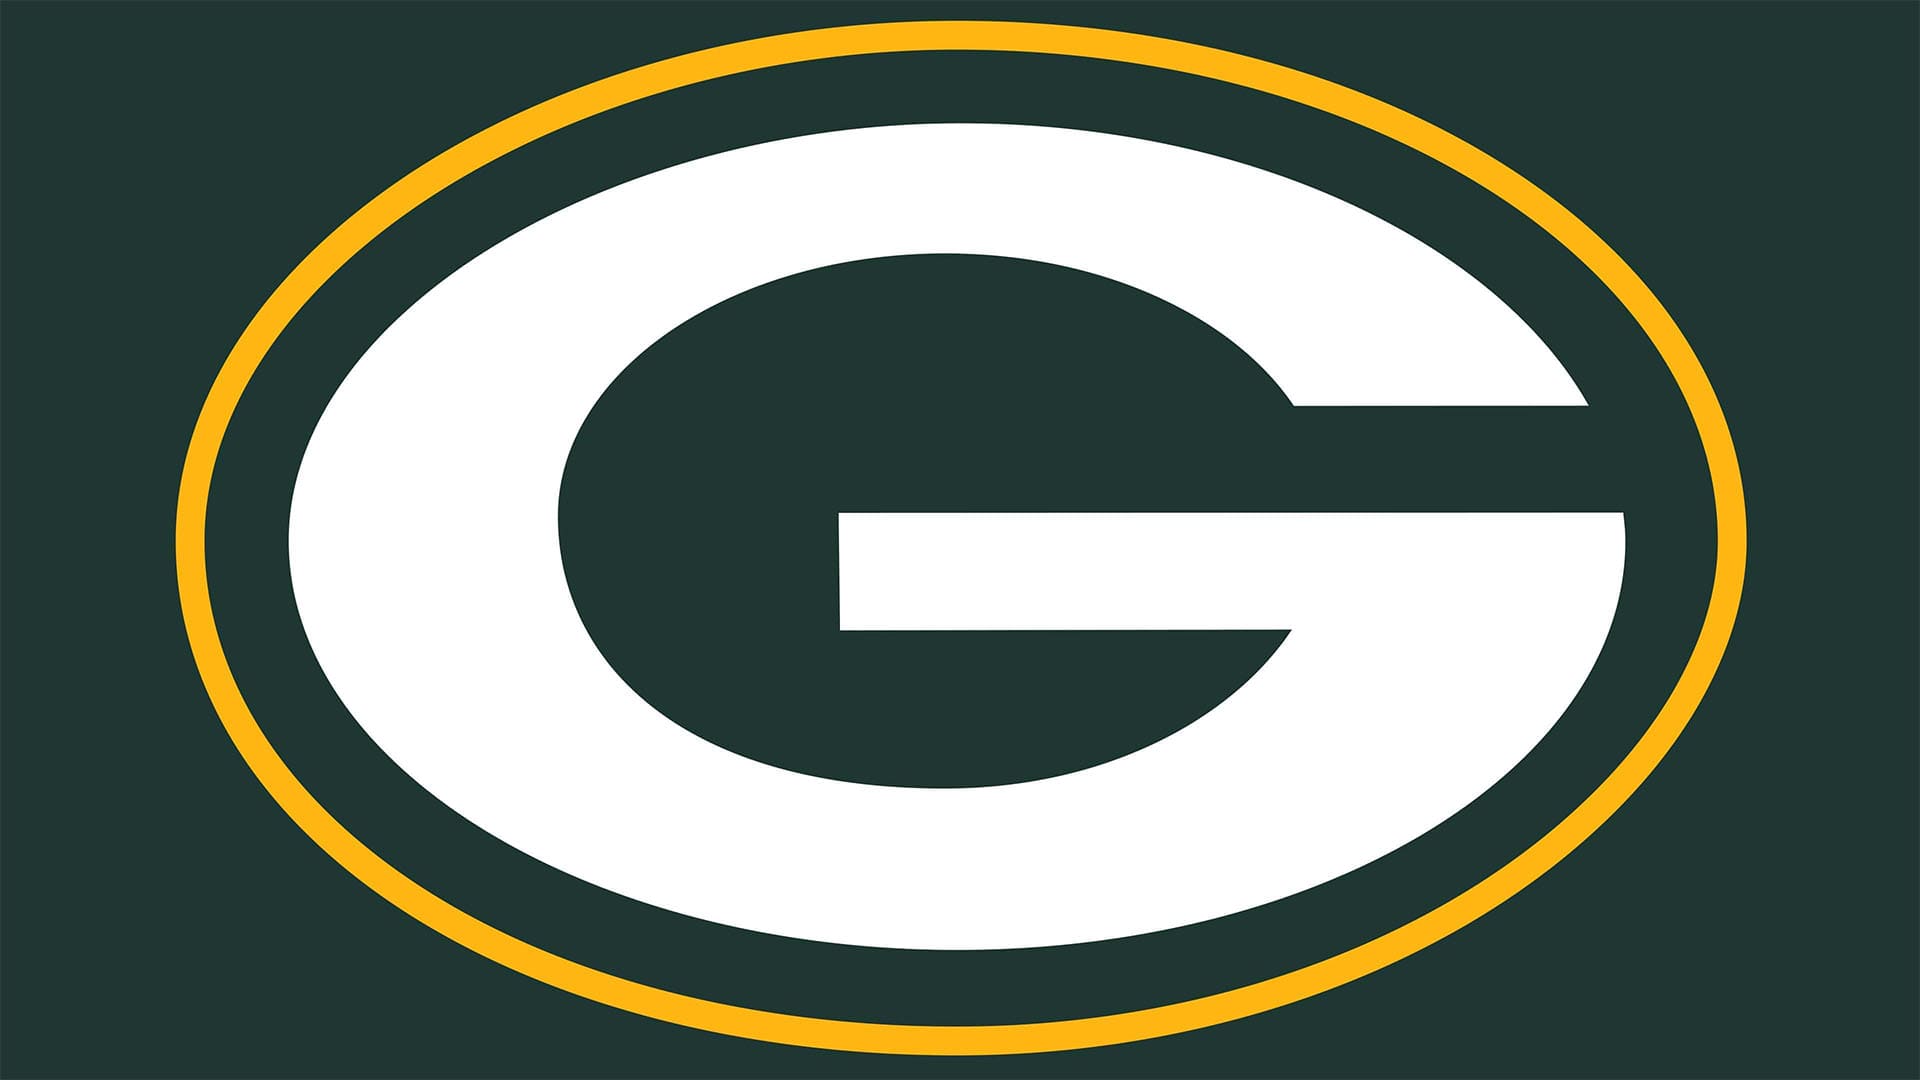 Green Bay Packers Logo : histoire, signification de l'emblème